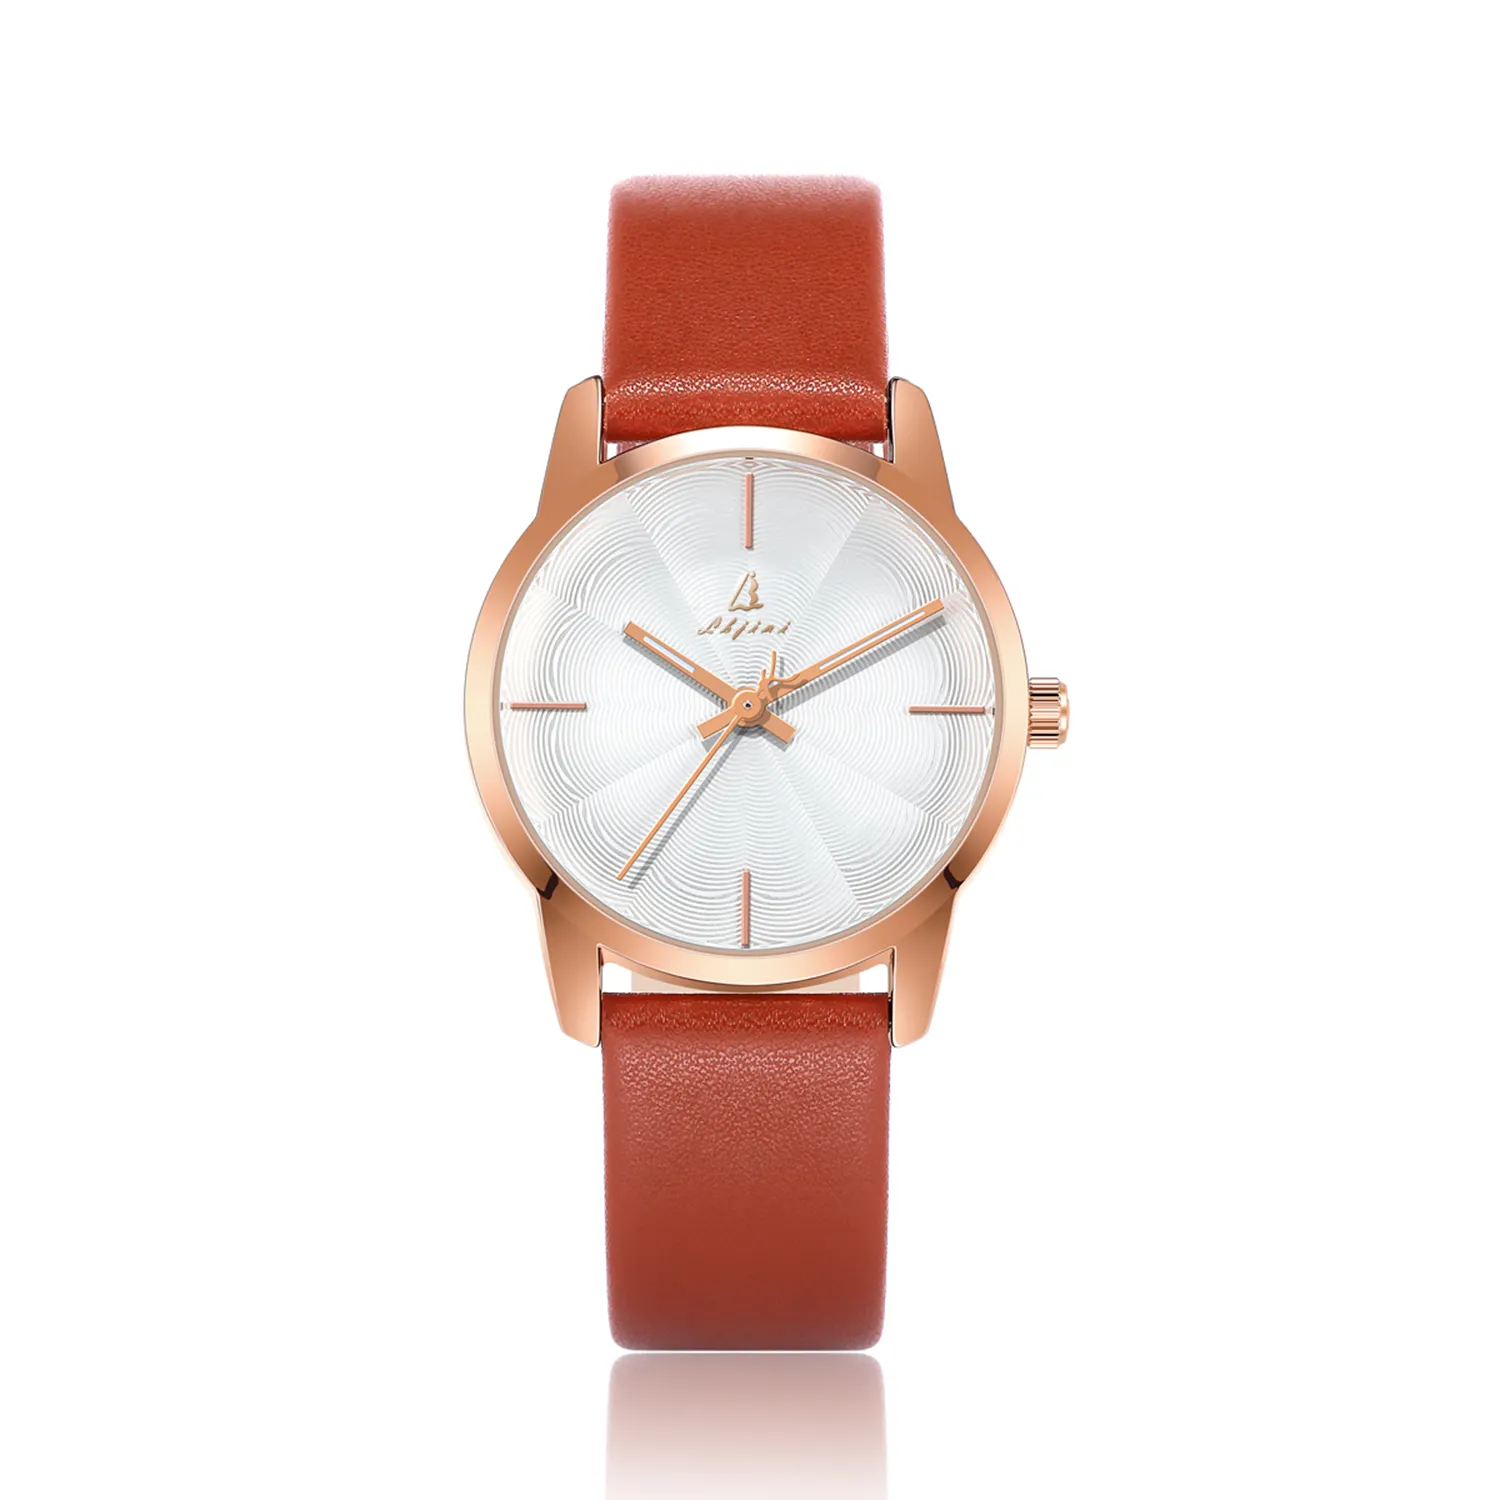 ของขวัญธุรกิจ Sunray เลดี้บางนาฬิกาแฟชั่นแก้วคริสตัลผู้หญิงนาฬิกาควอตซ์หนังแท้กันน้ำนาฬิกาข้อมือผู้หญิง